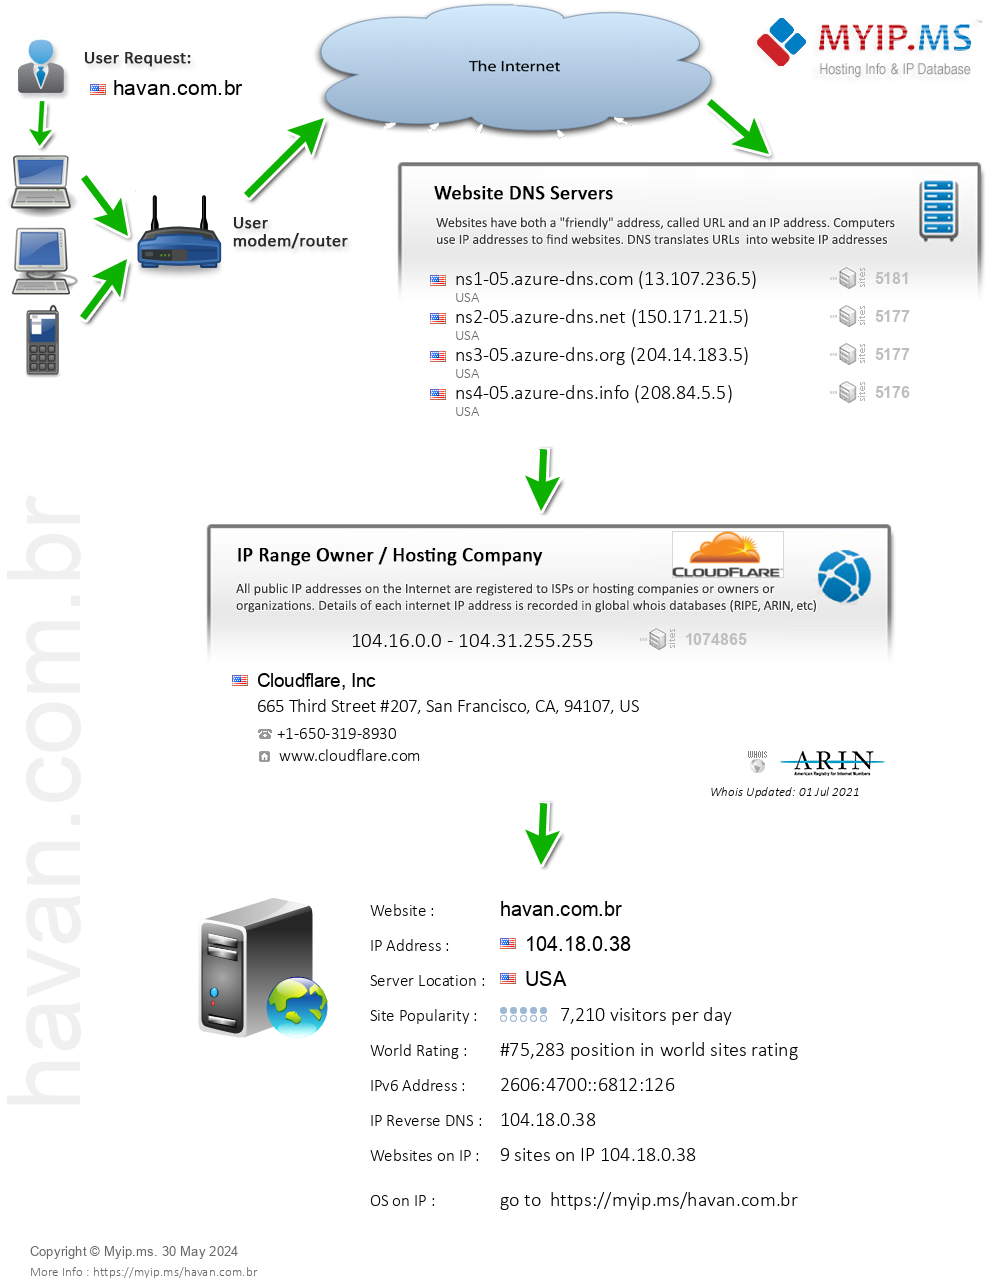 Havan.com.br - Website Hosting Visual IP Diagram